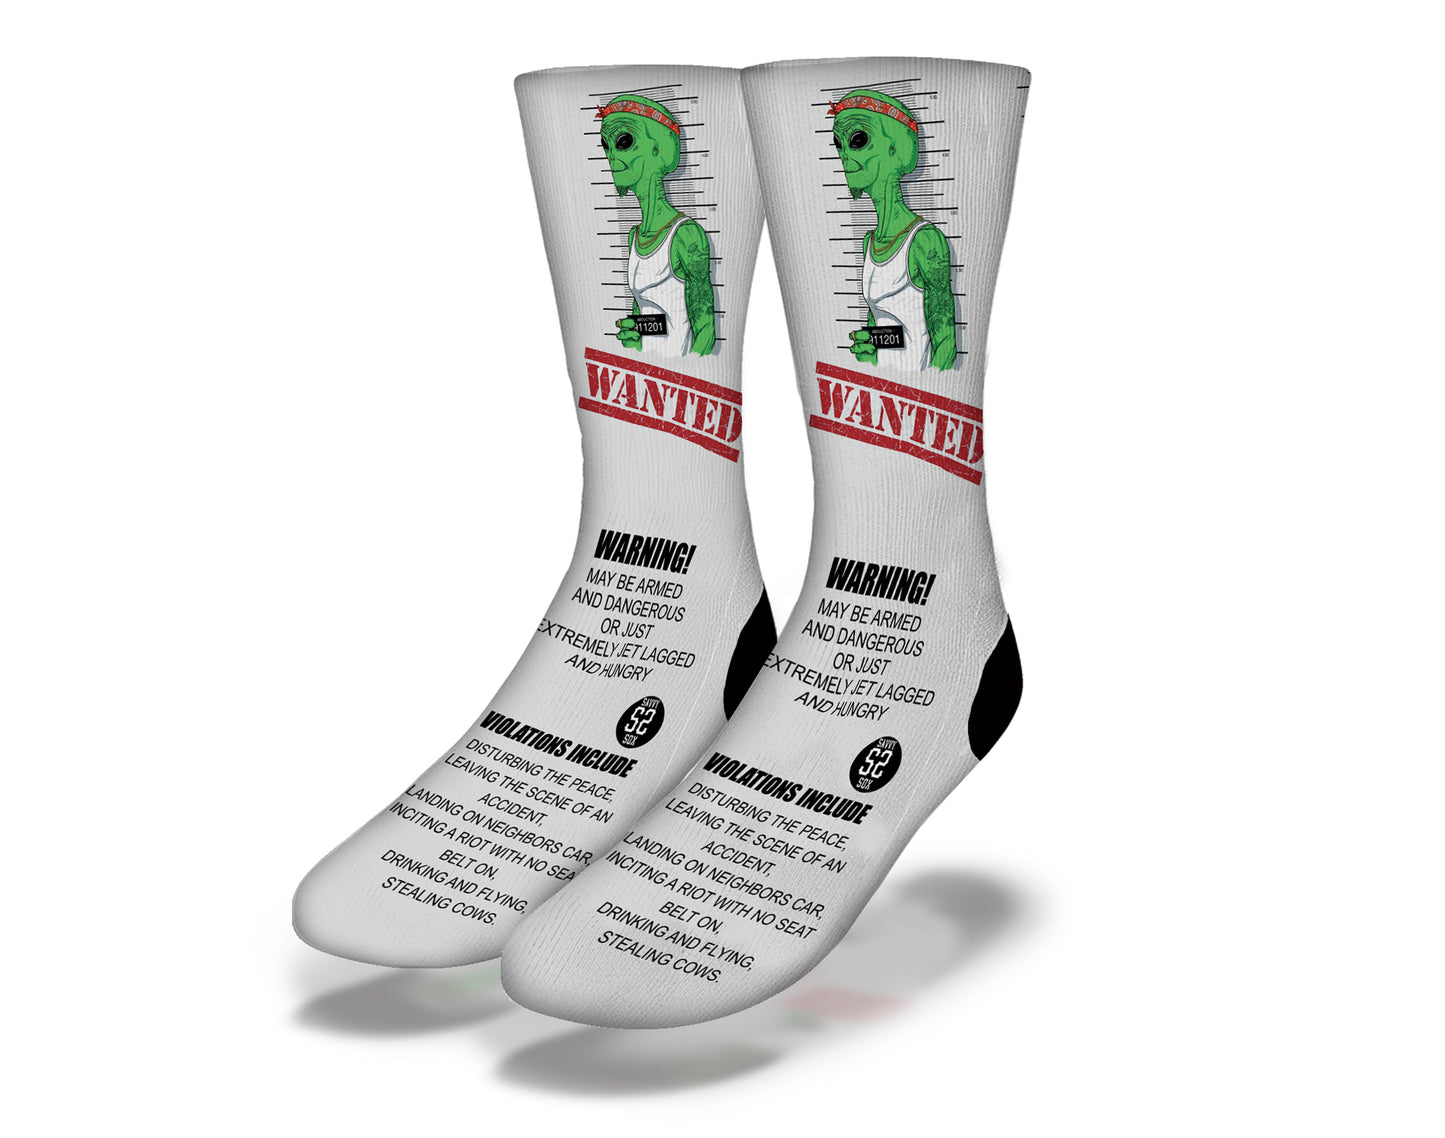 Wanted Alien Socks